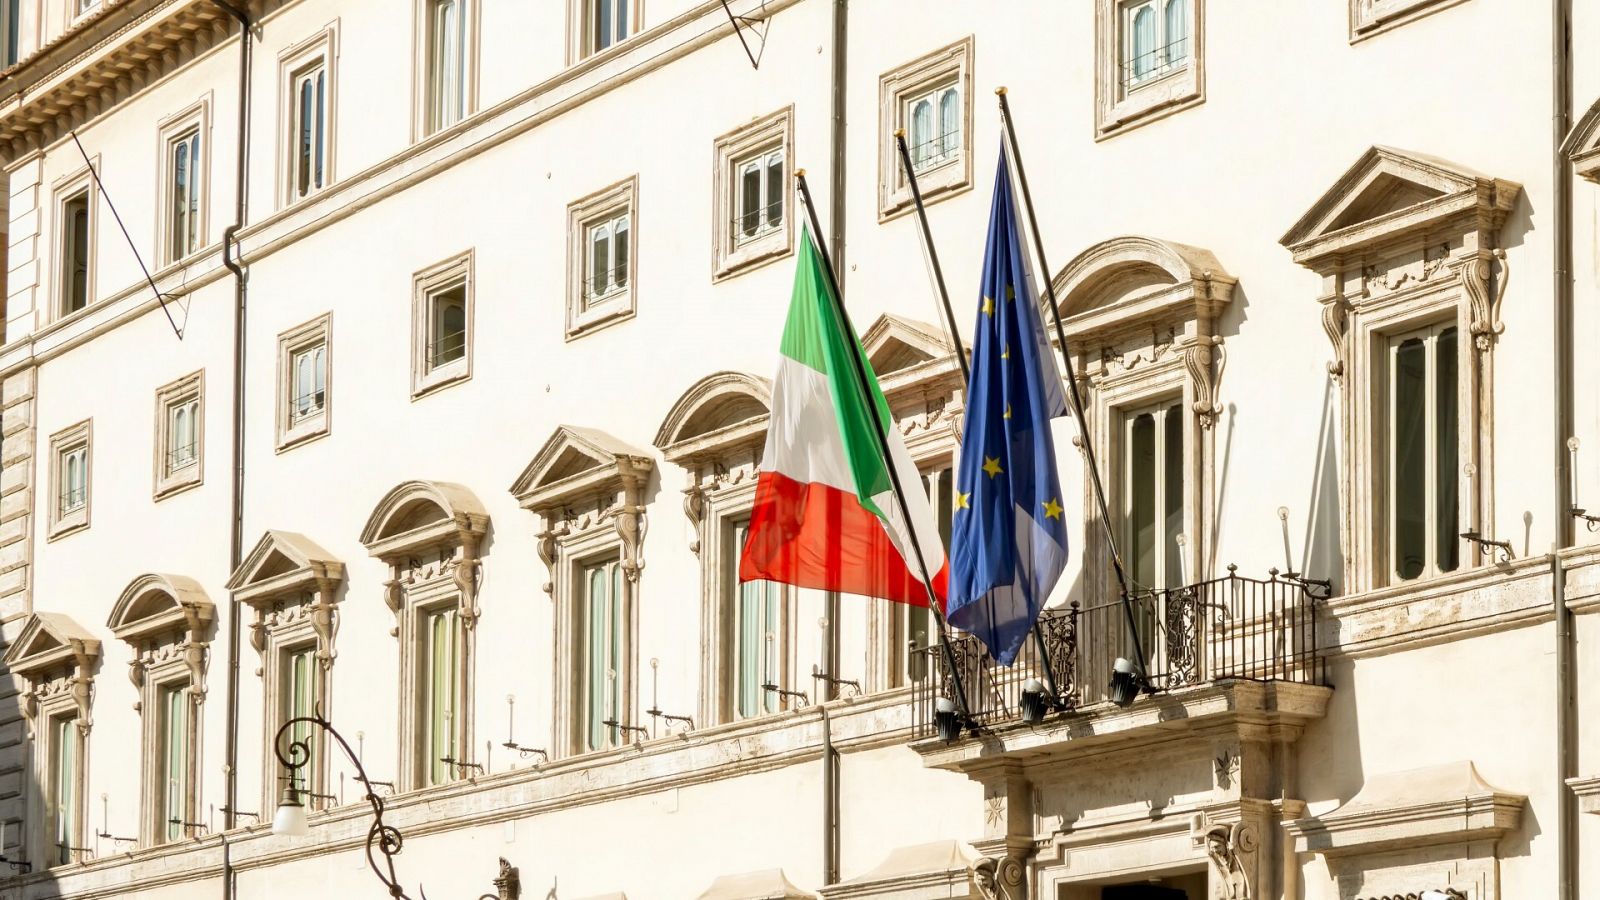 Fachada del Palazzo Chigi en Roma, sede del primer ministro italiano y el gobierno